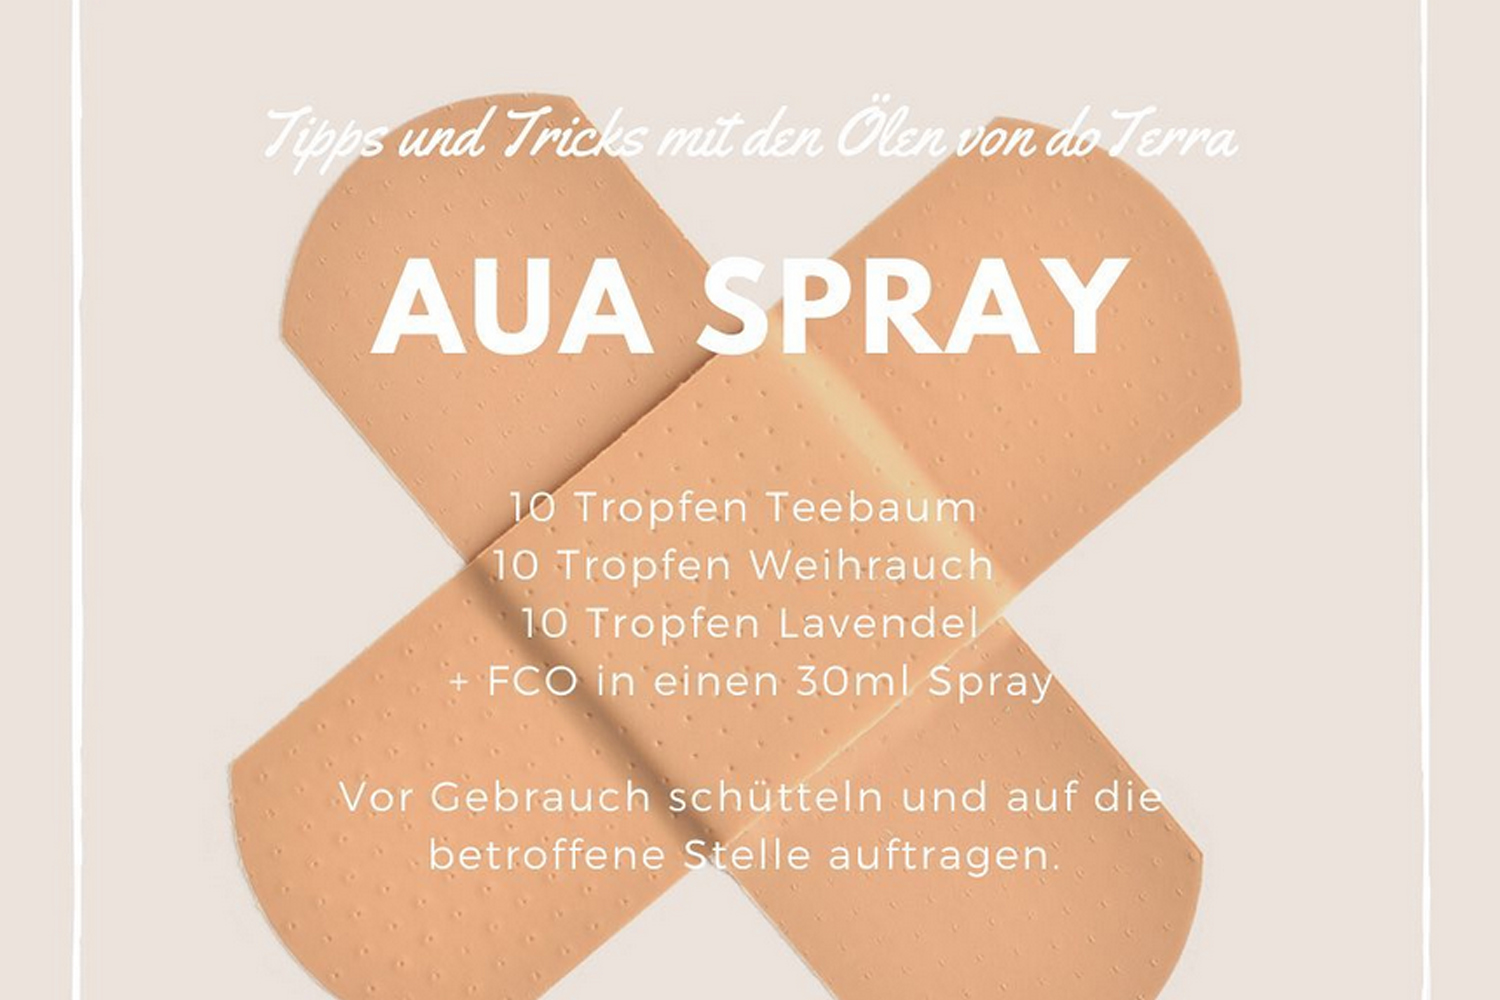 Gegen Wehwehchen hilft das Aua-Spray. Es besteht aus ätherischen Ölen wie z.B. Lavendel oder Weihrauch.